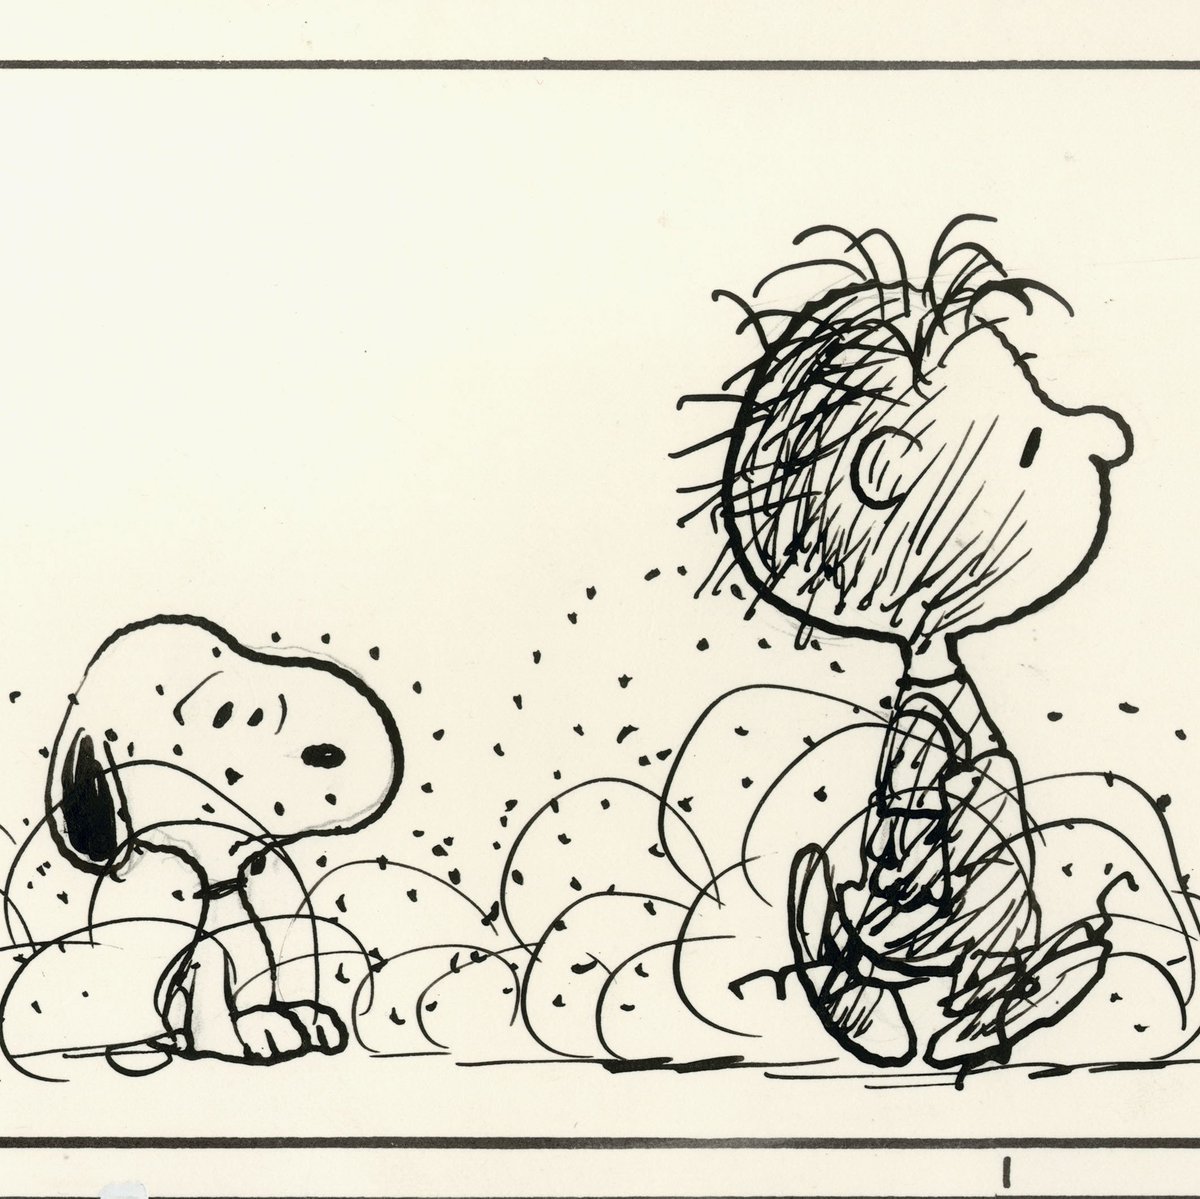 Snoopy Museum Tokyo ブラウンズストアから 週替わりtシャツ第8週 6 12 の予告 ピッグペンが通過した後は必ず埃が舞います たとえお風呂に入って綺麗さっぱりになっても ちょっと外を歩けばいつのまにか埃まみれ 雨の中でも砂埃を立たせる才能が